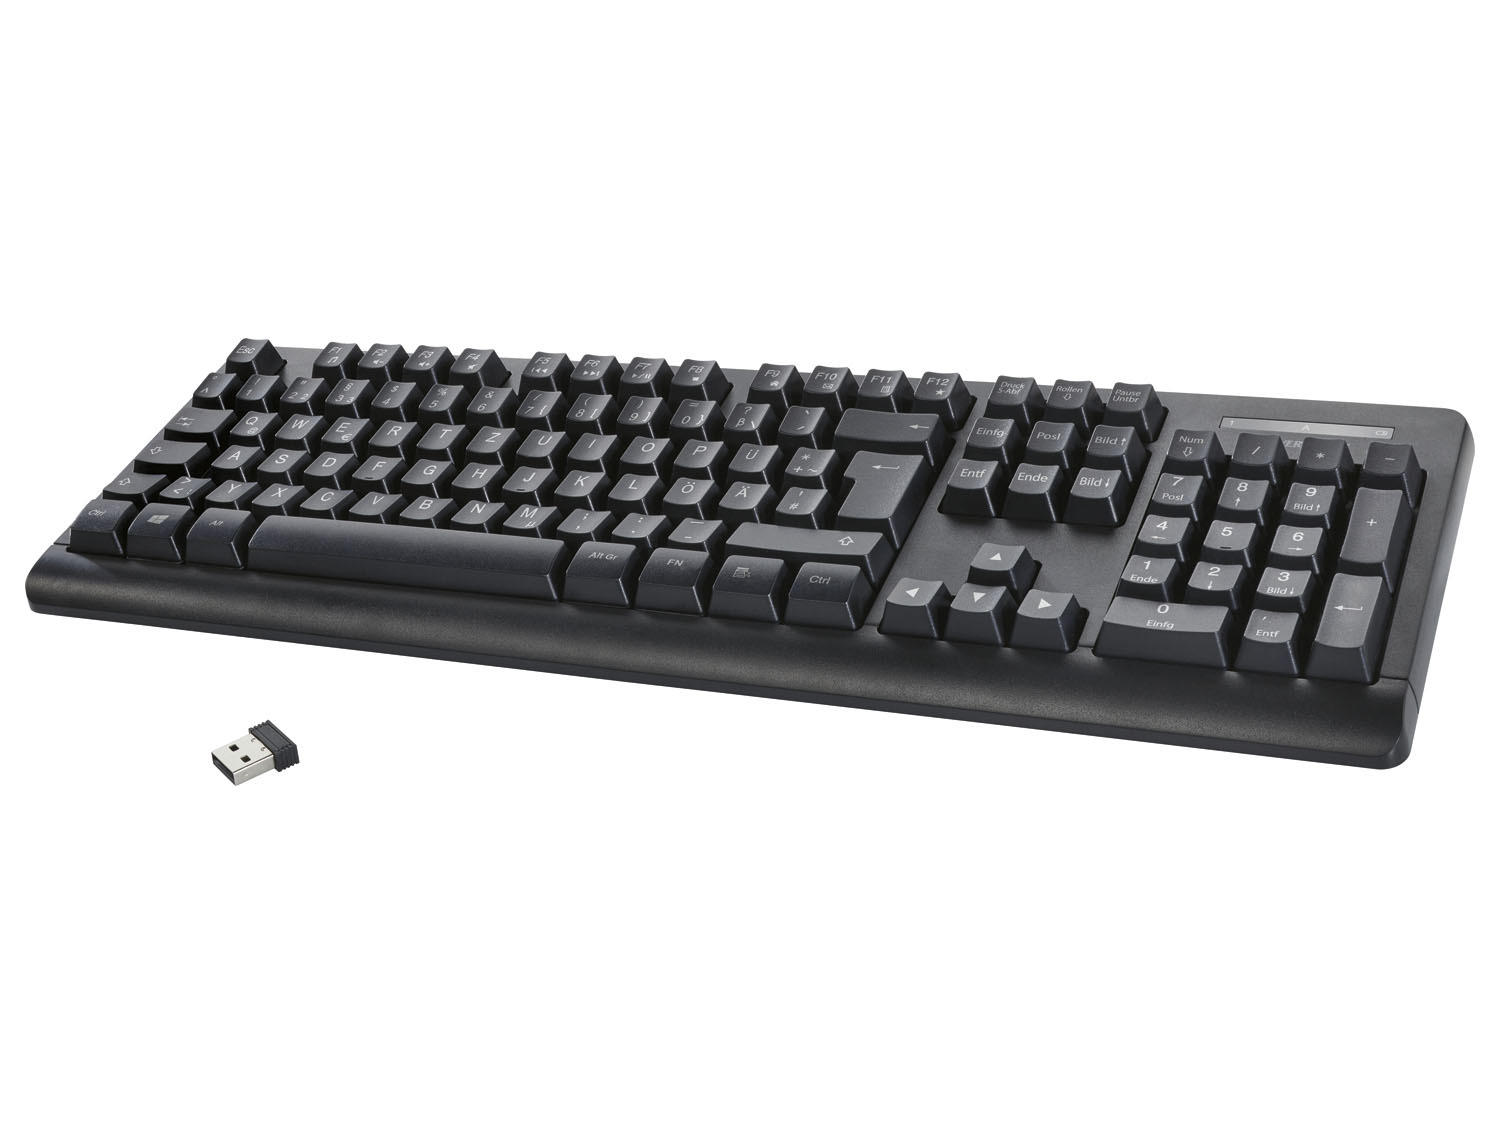 SILVERCREST® Tastatur, kabellos, mit USB-Nano-Empfänger